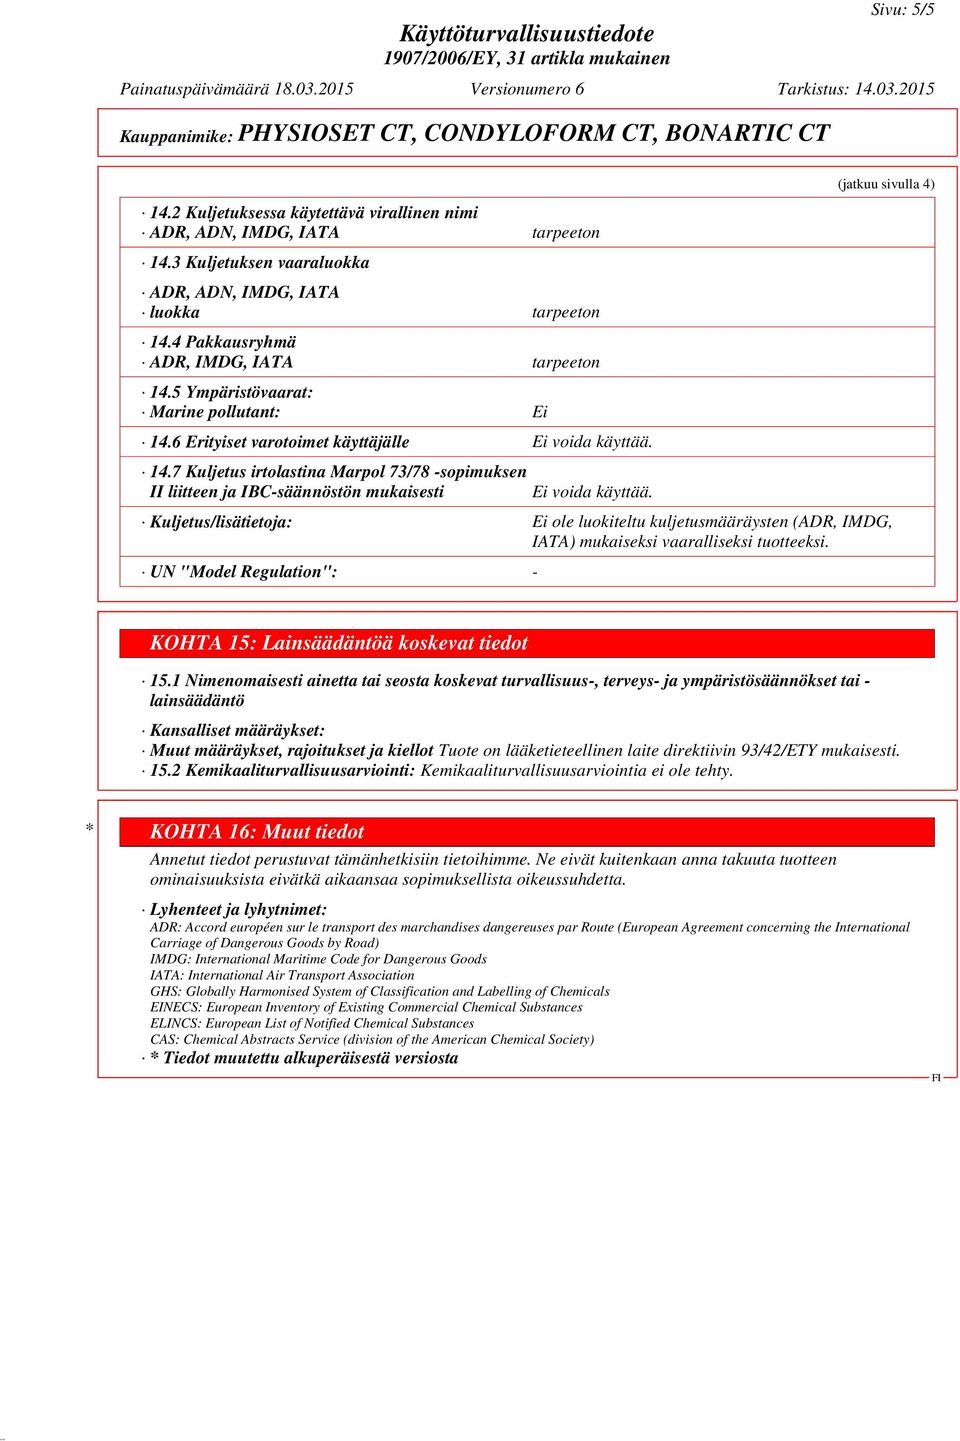 7 Kuljetus irtolastina Marpol 73/78 -sopimuksen II liitteen ja IBC-säännöstön mukaisesti (jatkuu sivulla 4) Kuljetus/lisätietoja: Ei ole luokiteltu kuljetusmääräysten (ADR, IMDG, IATA) mukaiseksi